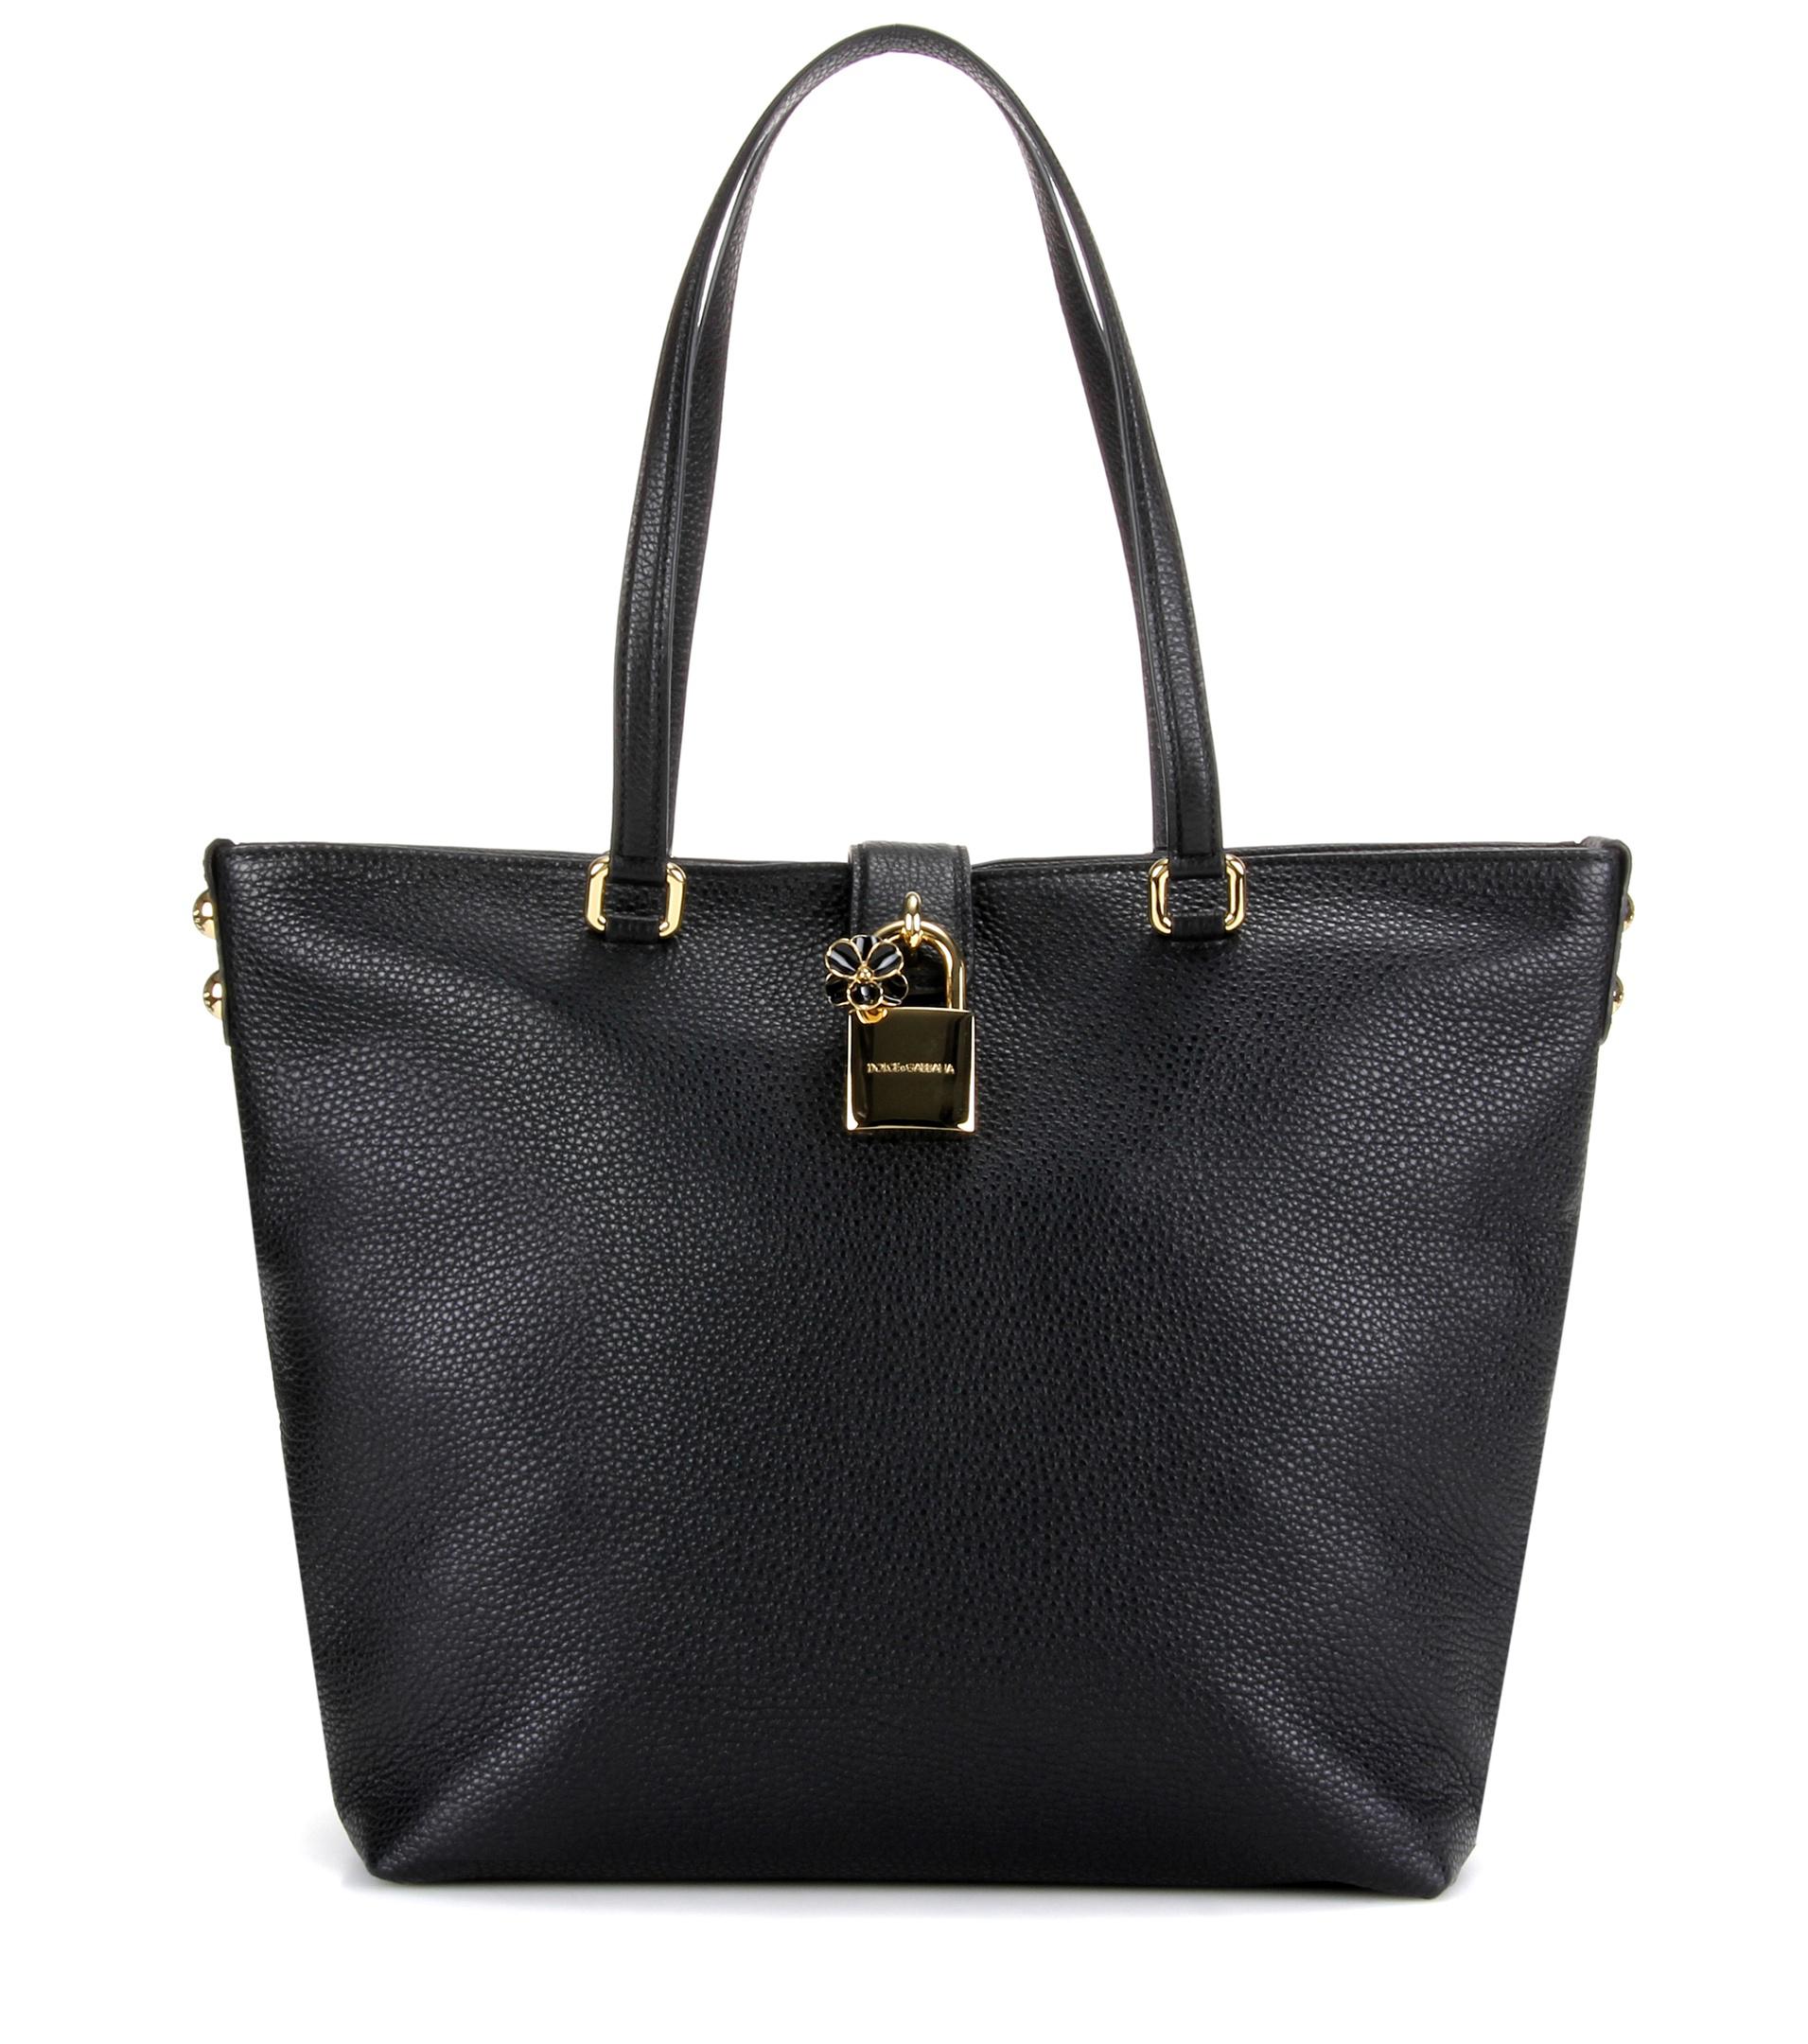 Lyst - Dolce & Gabbana Dolce Shopping Leather Shoulder Bag in Black